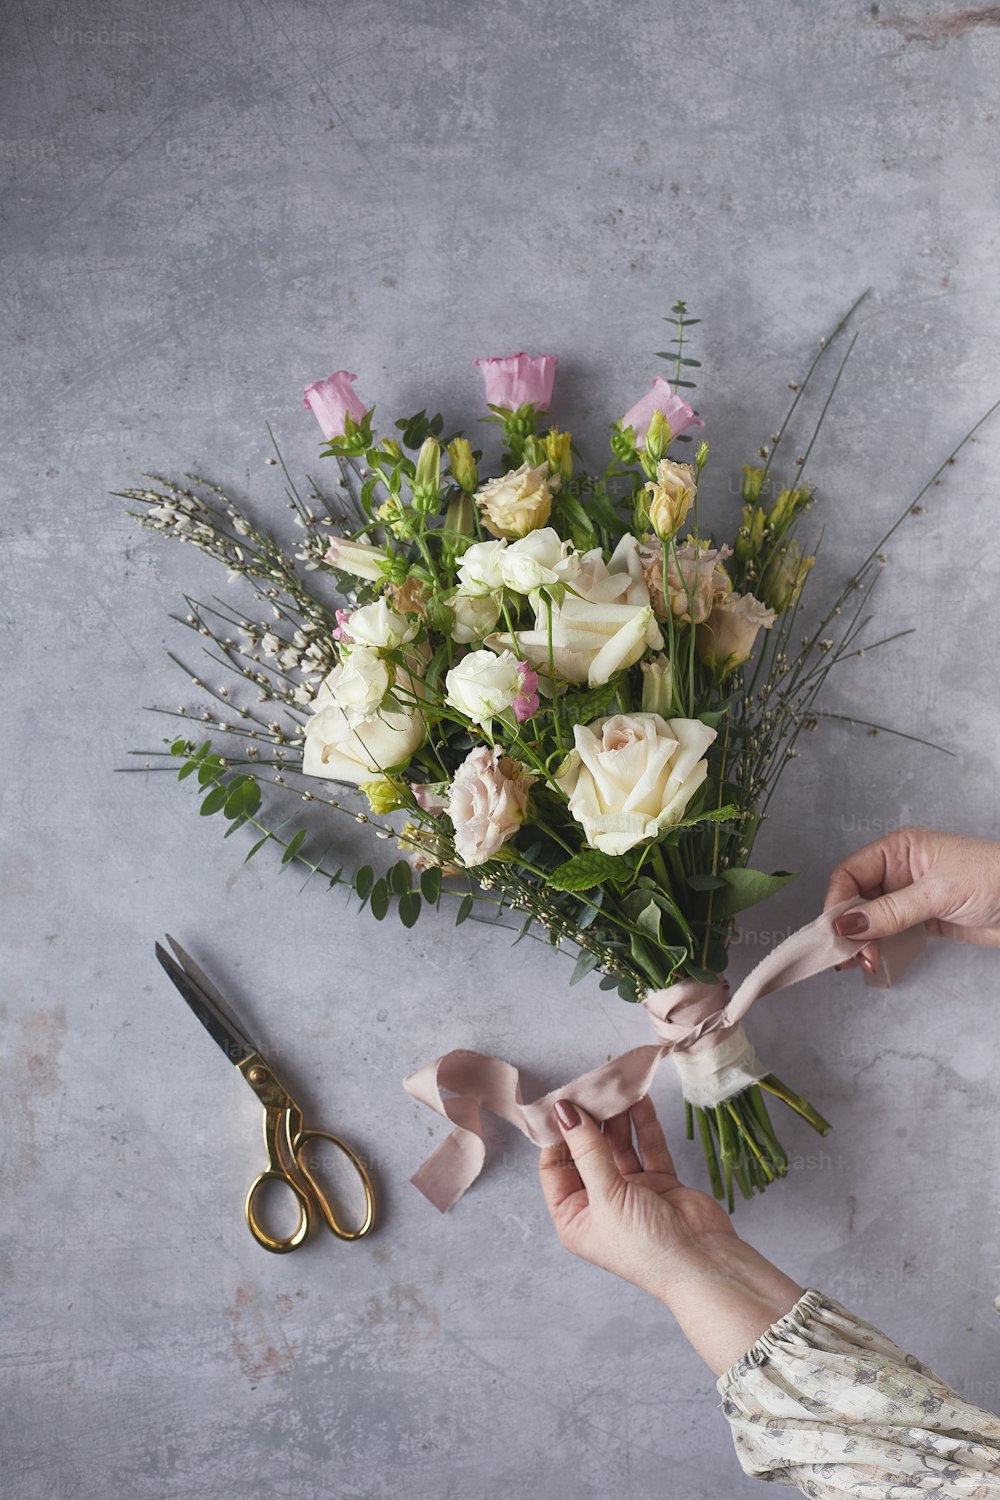 une personne coupant des fleurs avec des ciseaux sur une table